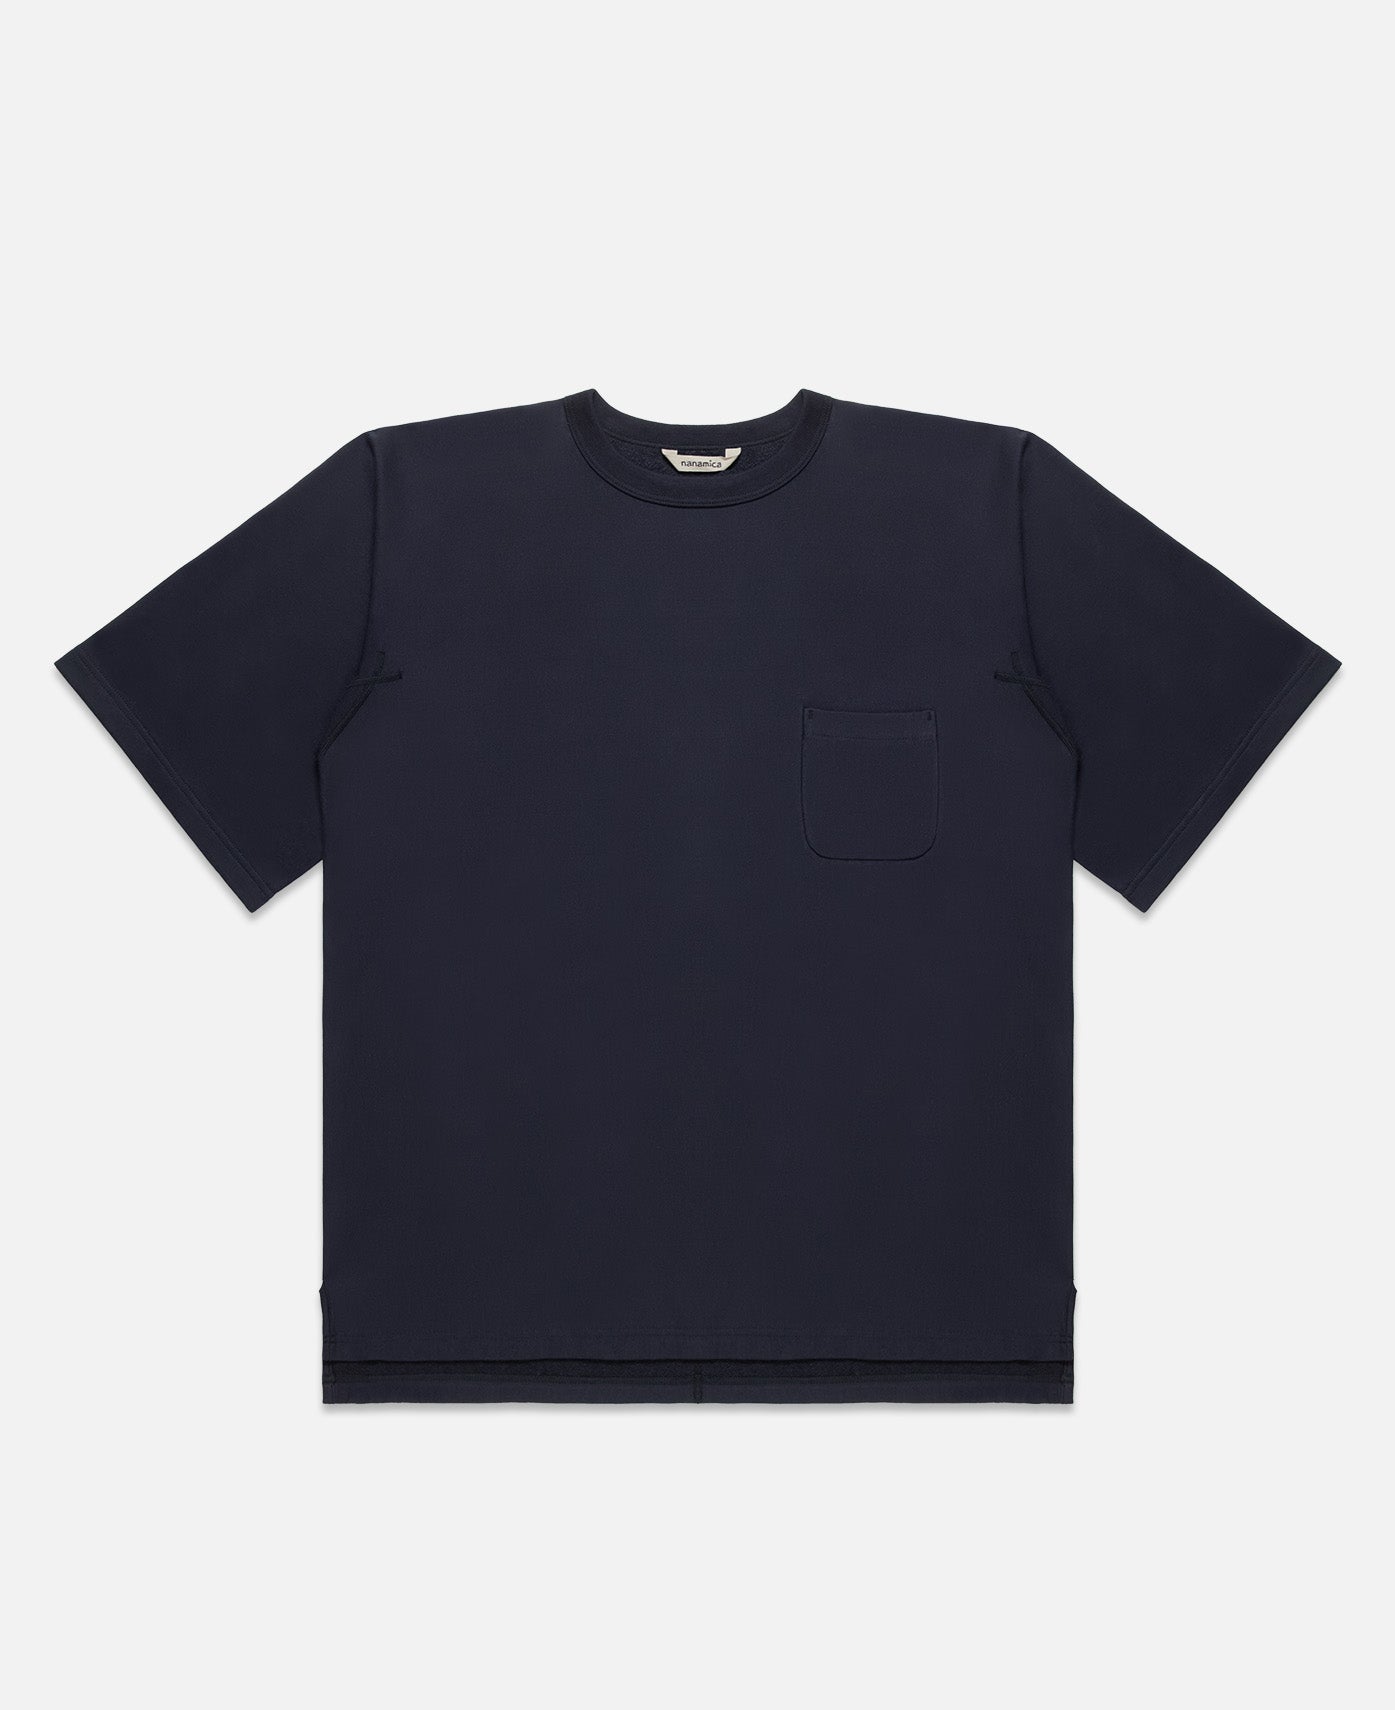 Kodenshi Pocket T-Shirt (Navy)